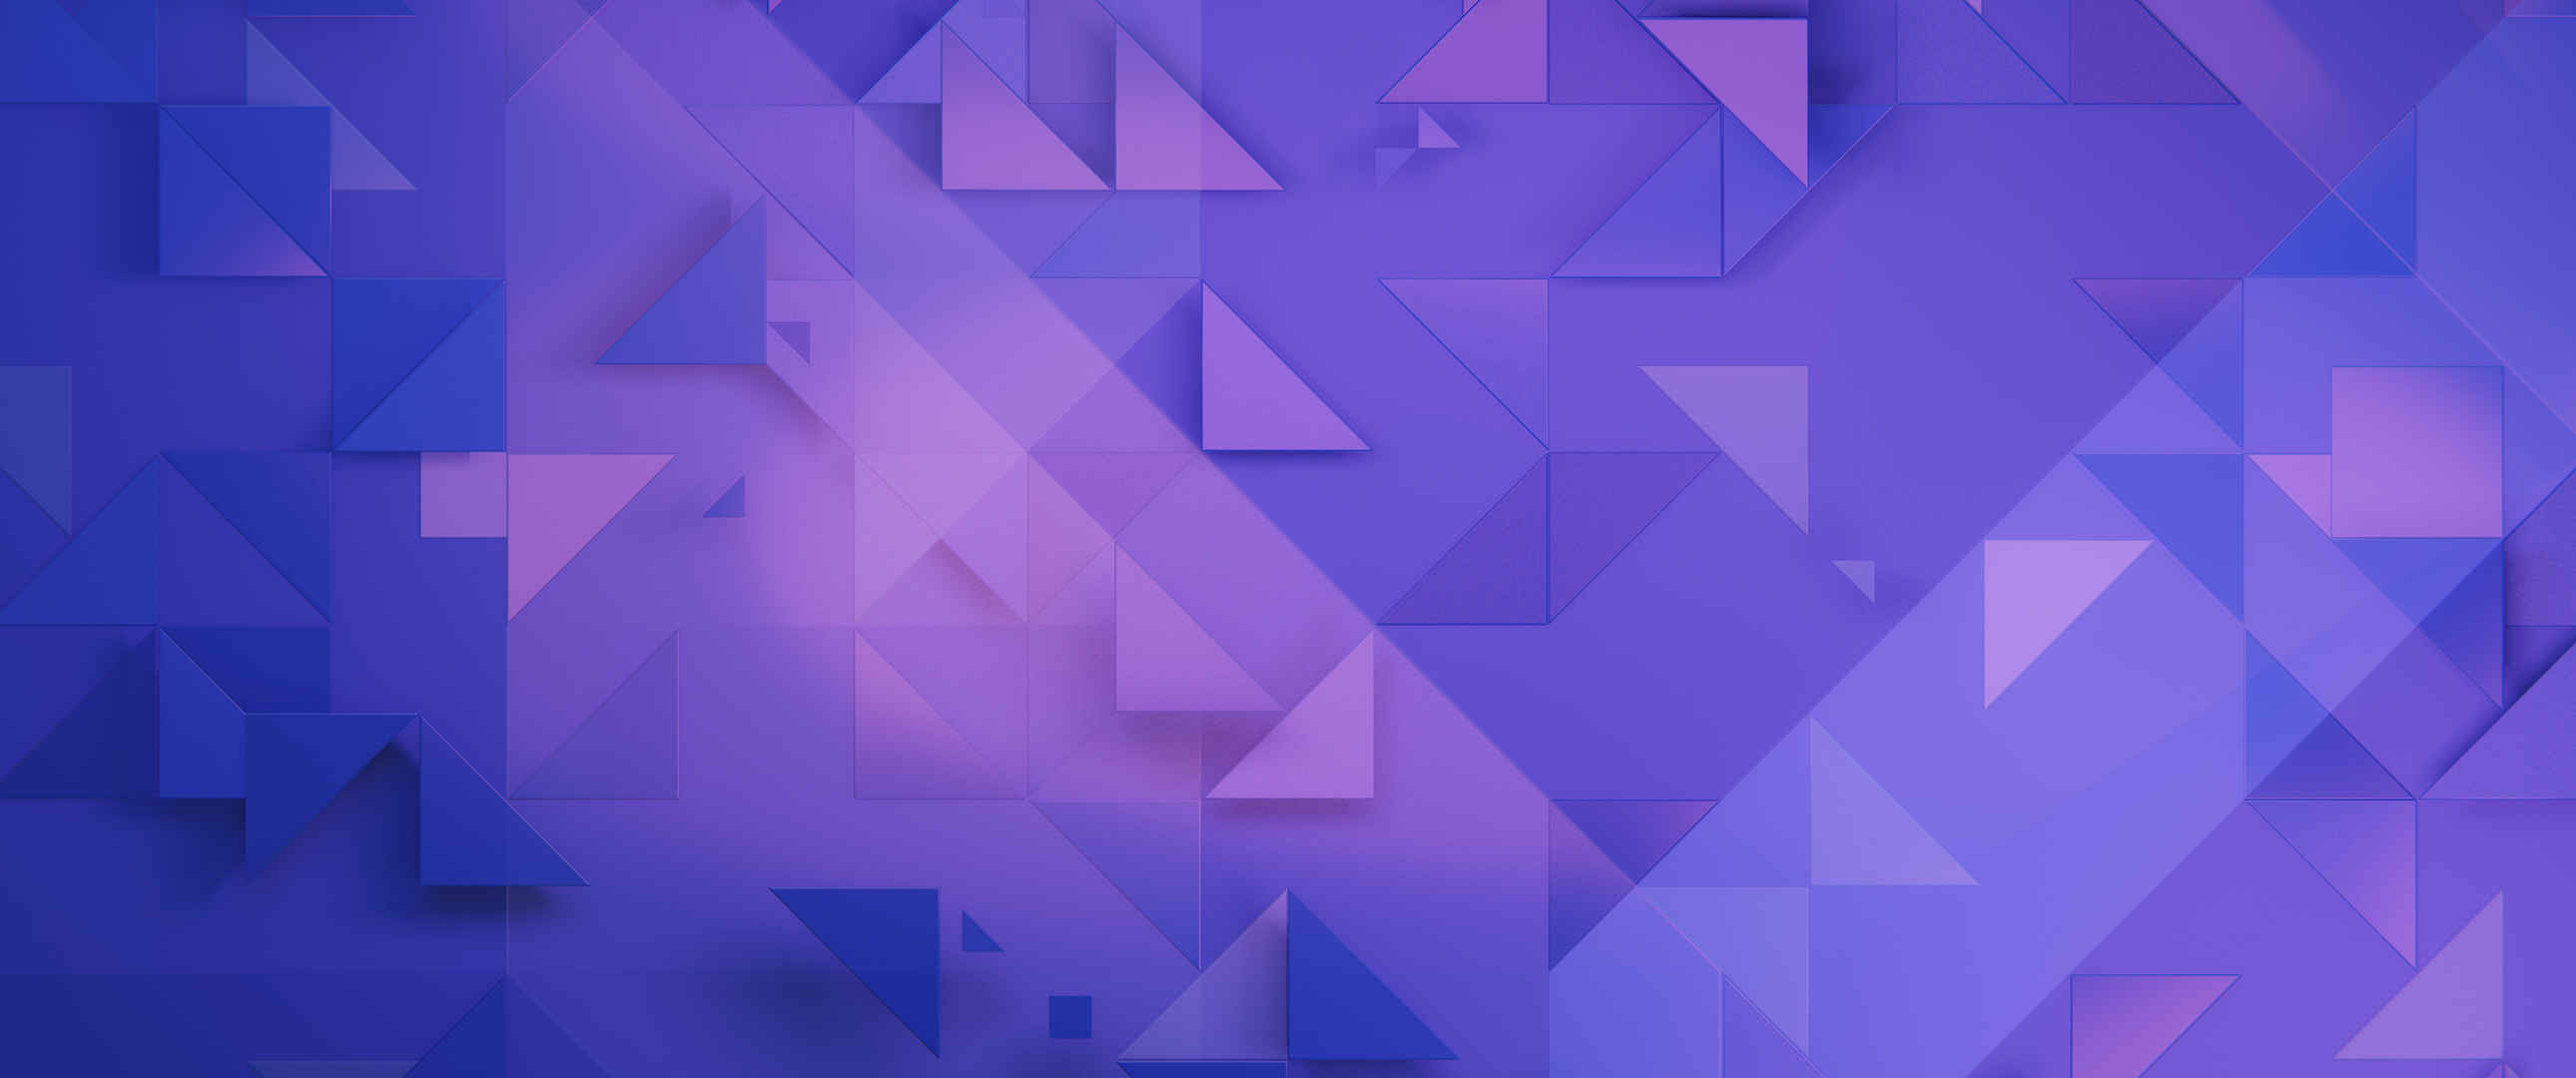 紫色三角形背景壁纸